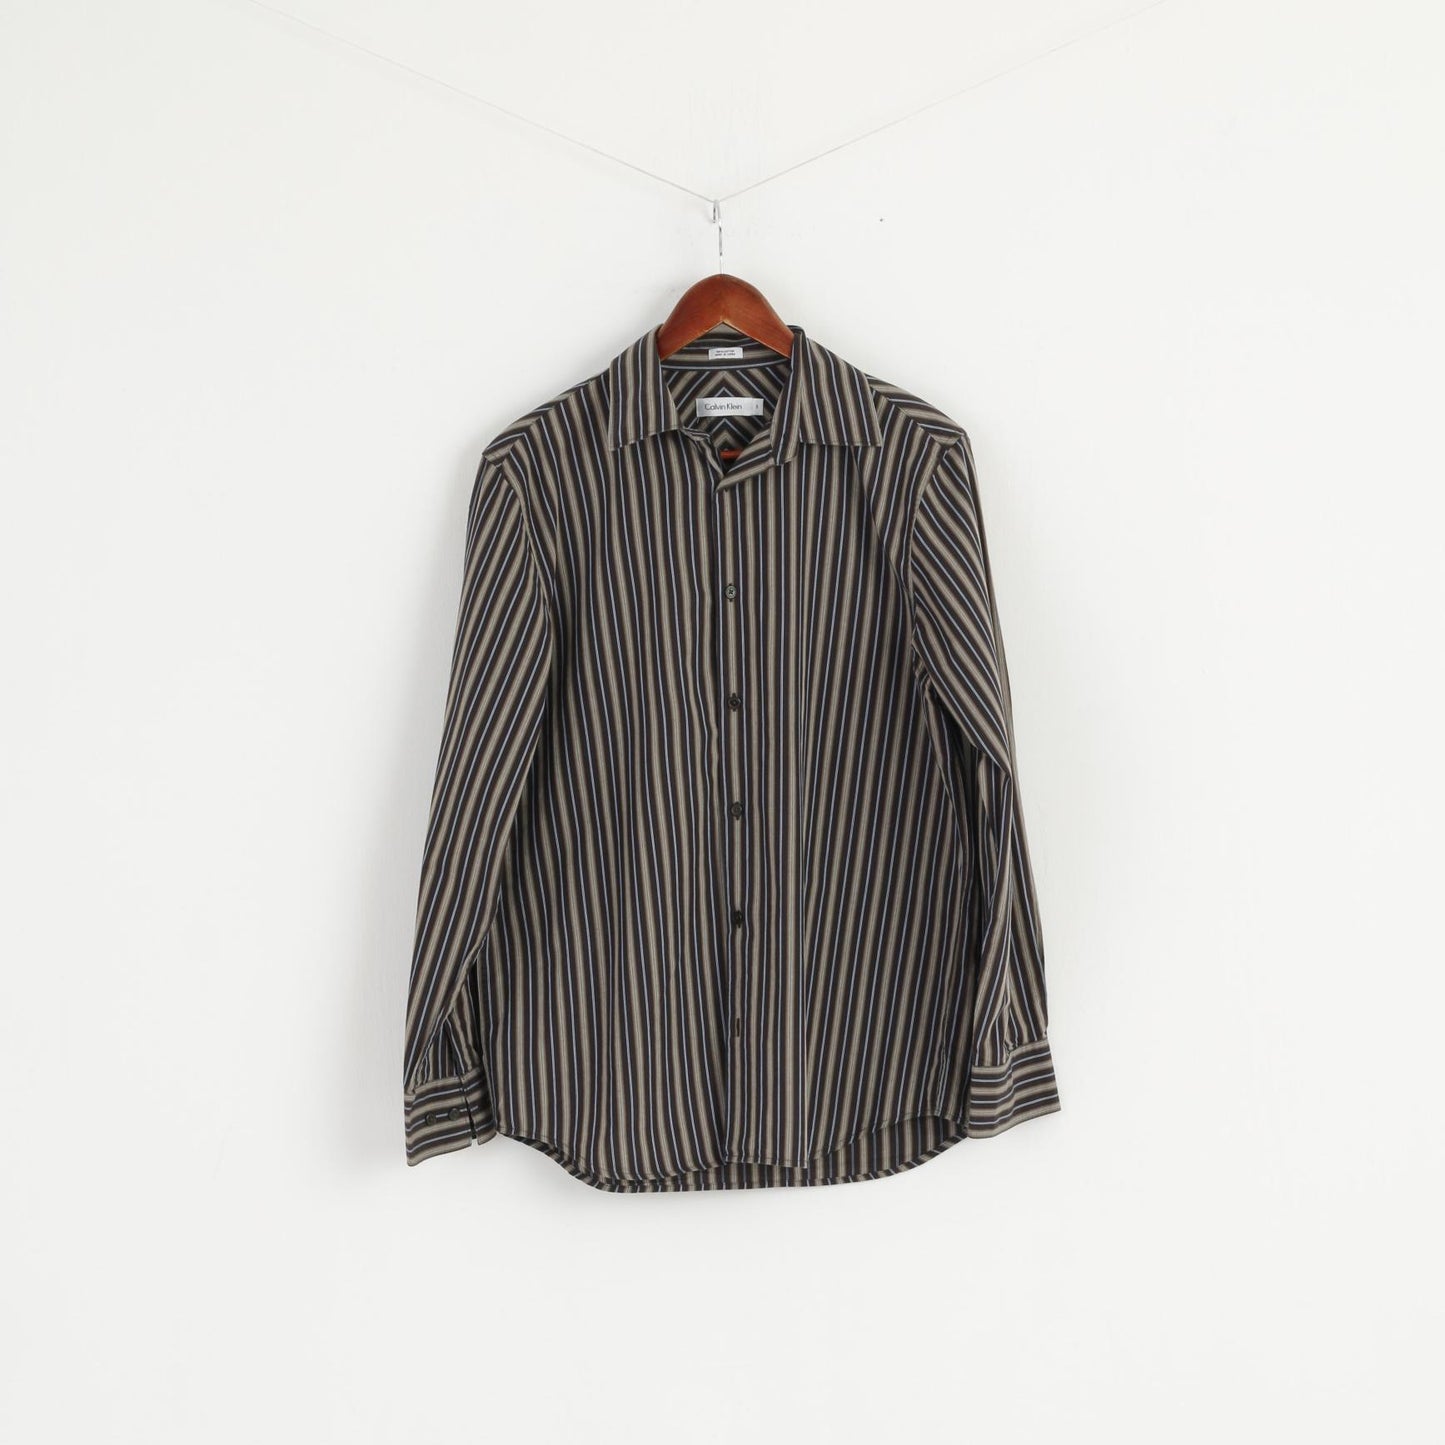 Calvin Klein Men S Casual Shirt Brown Striped Long Sleeve Cotton Top